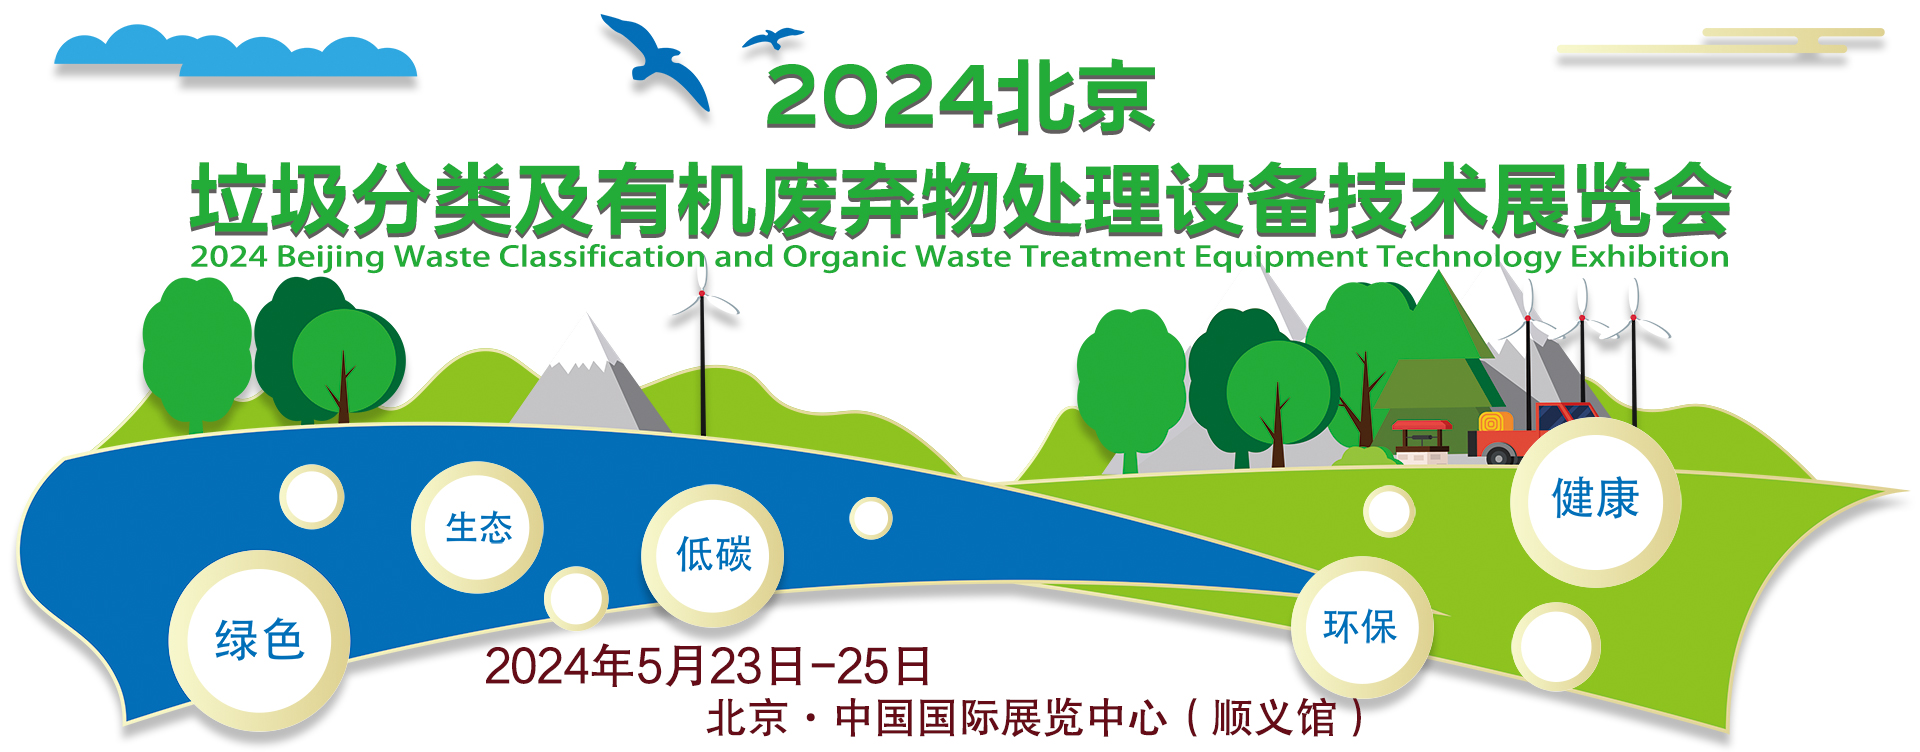 2023第四届北京垃圾分类及有机废弃物处理设备技术展览会